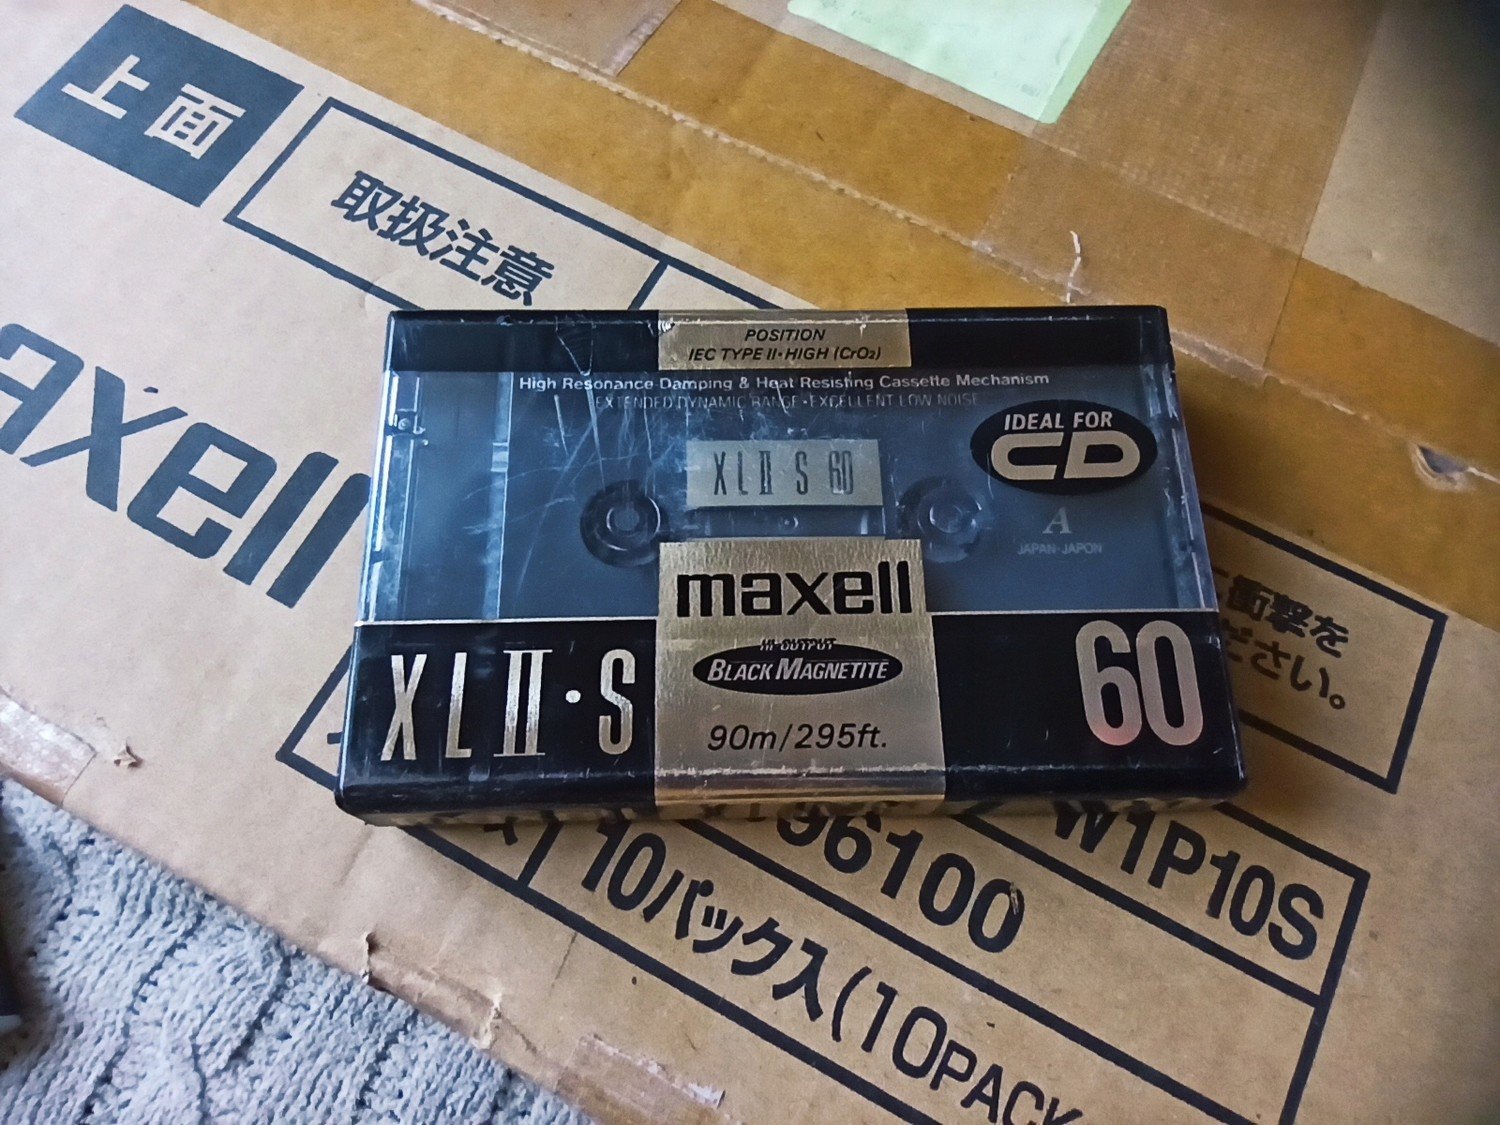 Maxell Xlii-s 60 1991r. Nová 1ks poškozená fólie